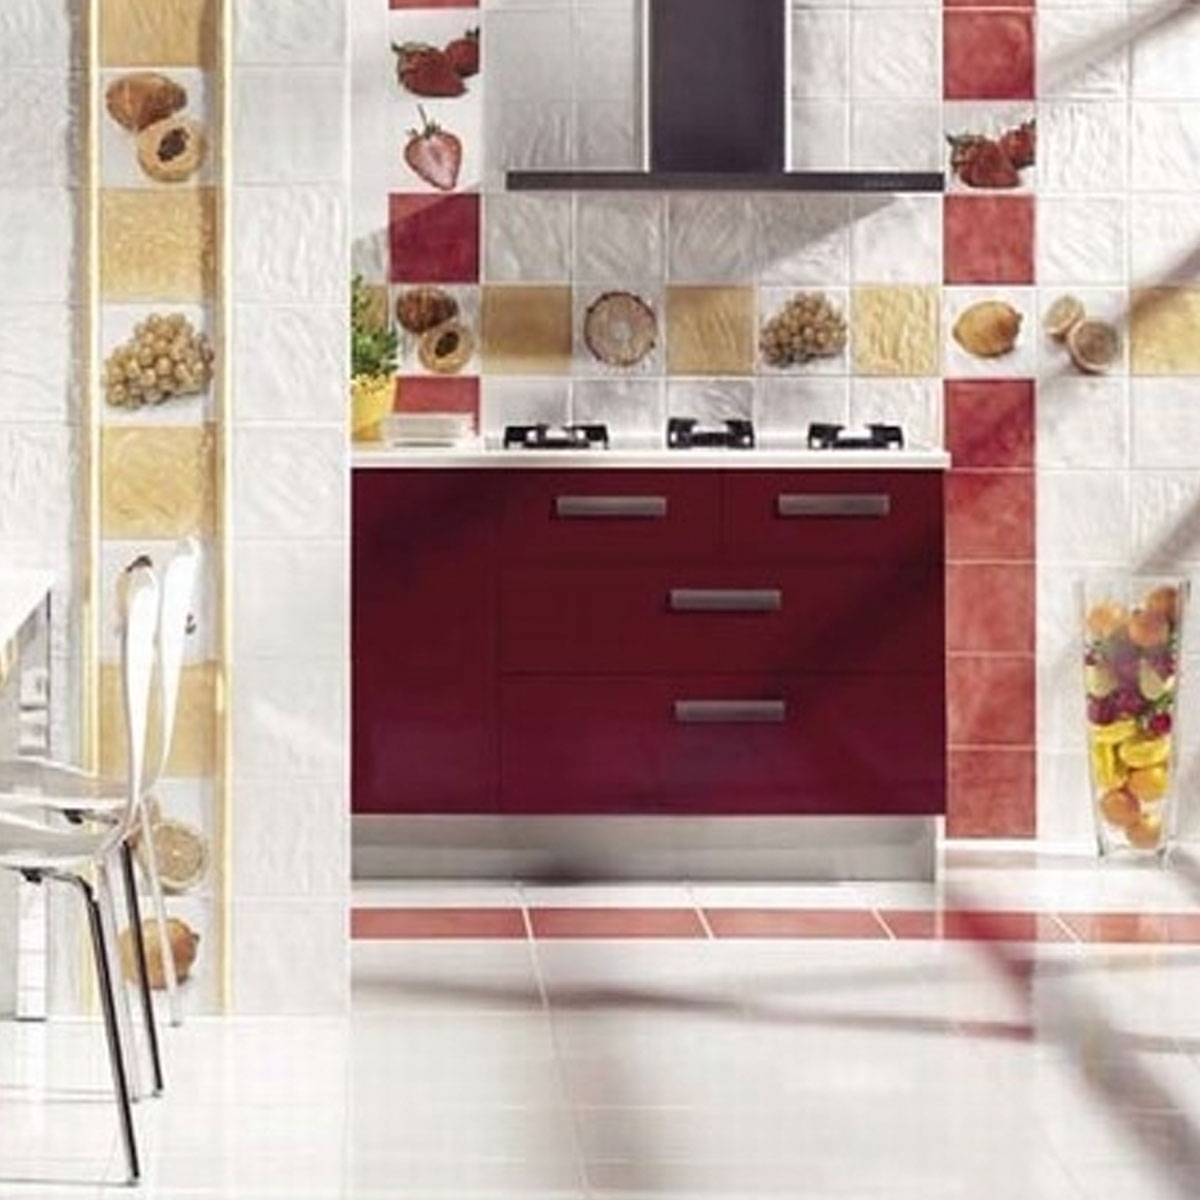 Vitta Rosso (Caixa 1 m2) - Revestimento cerâmico para interior Pasta vermelha efeito água